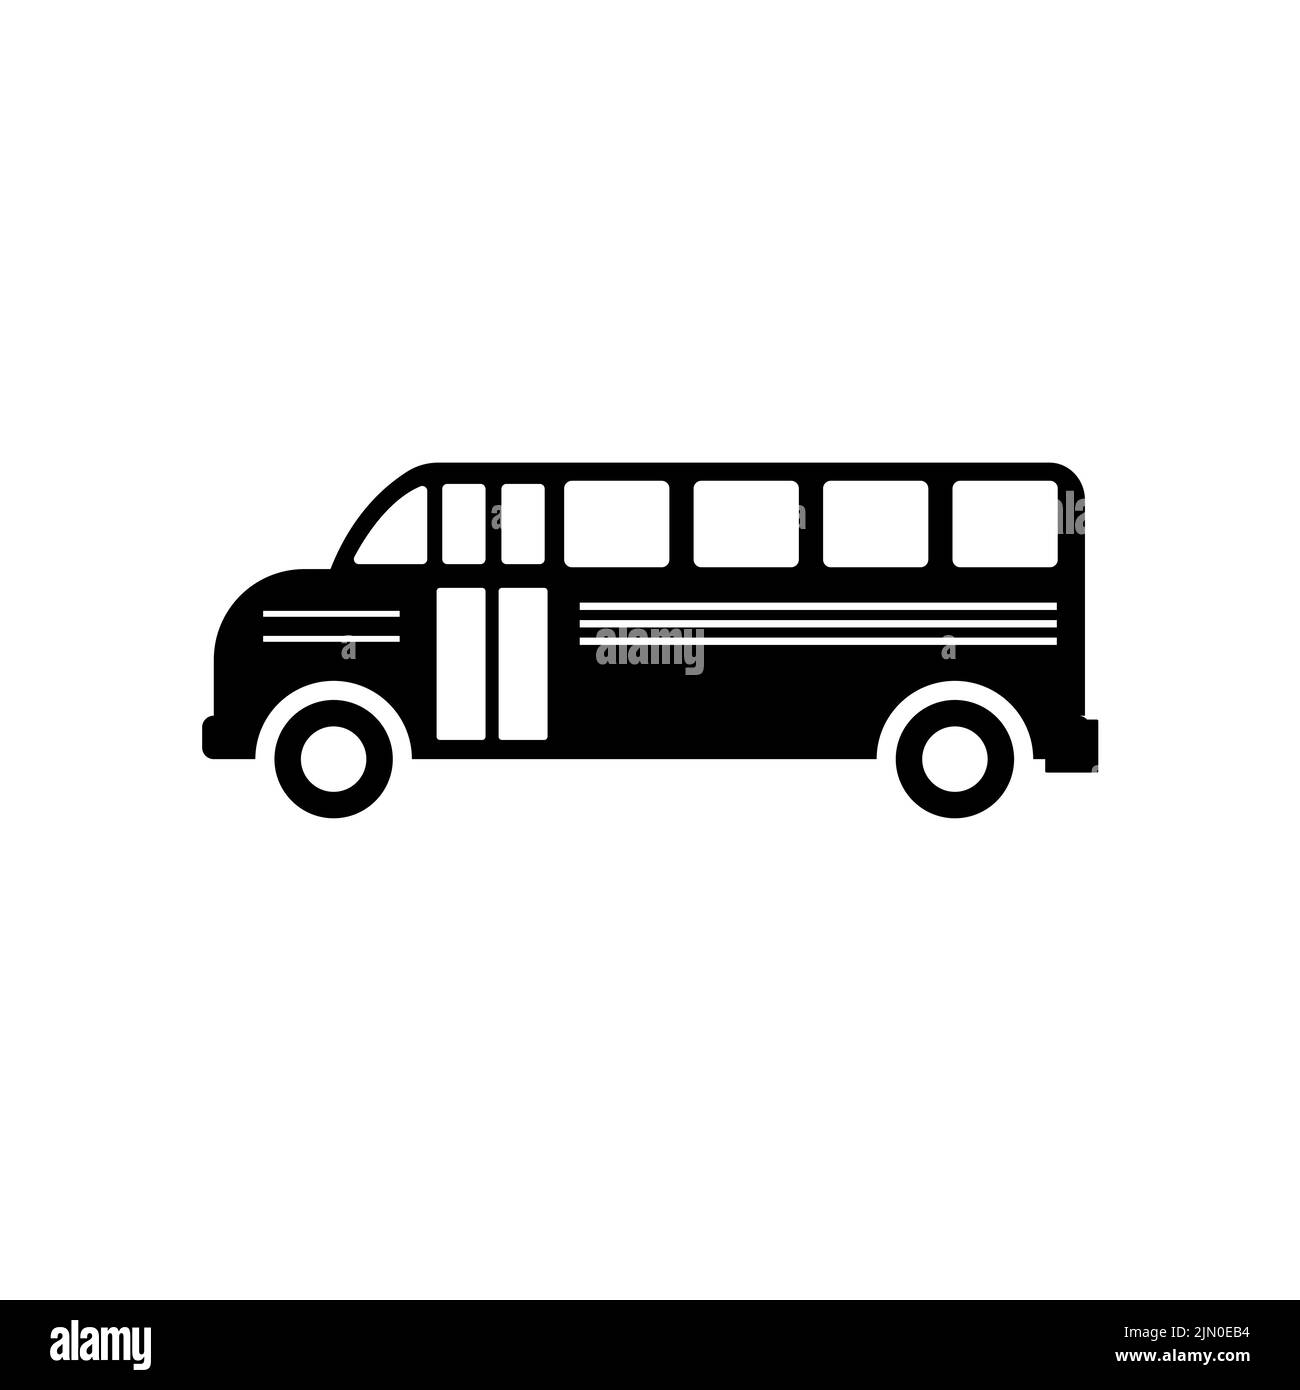 School bus icon. School bus icon symbol sign vector Stock Vector